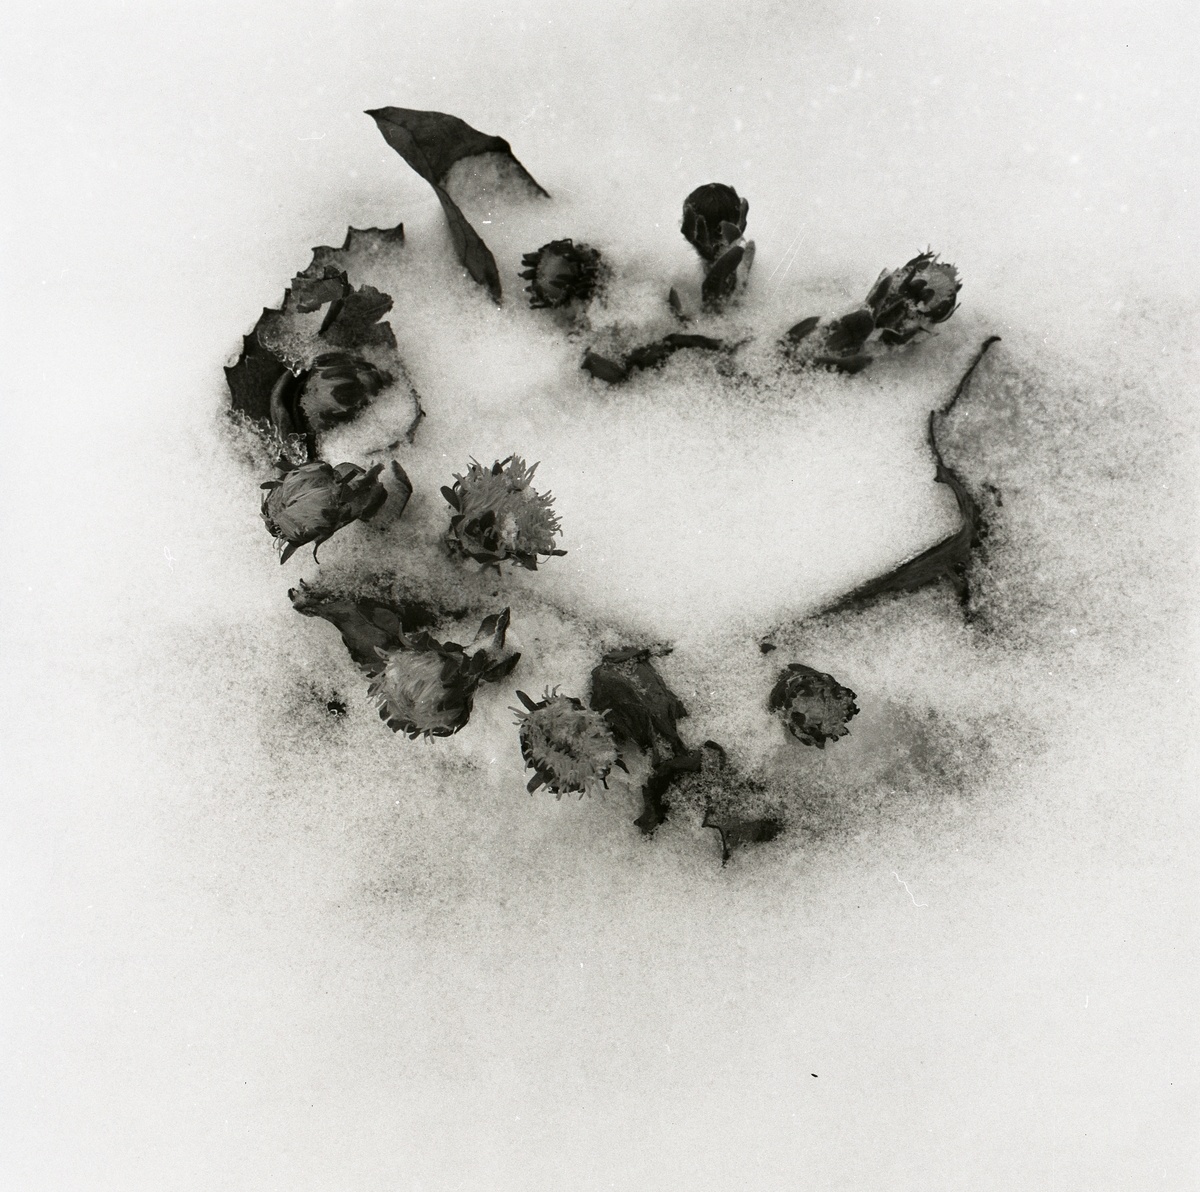 Tussilago i snö, cirka 1980.